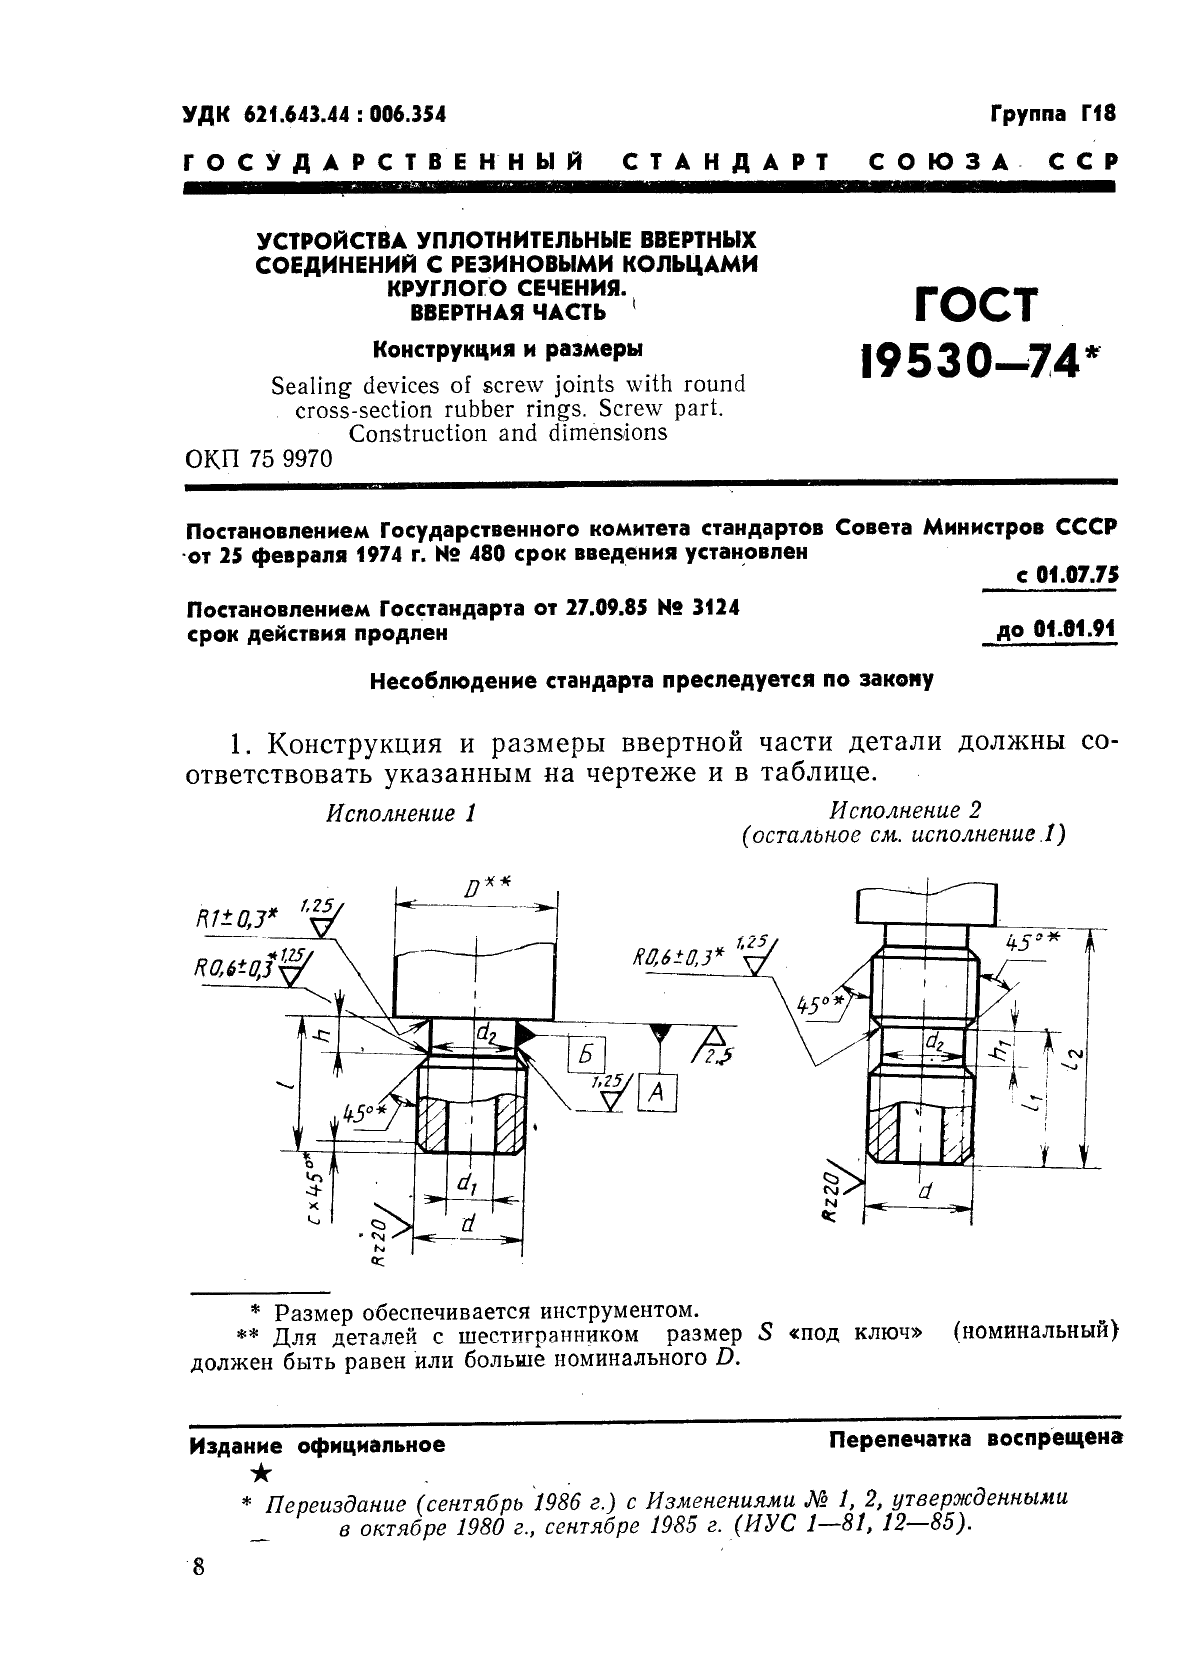 ГОСТ 19530-74 Устройства уплотнительные ввертных соединений с резиновыми кольцами круглого сечения. Ввертная часть. Конструкция и размеры (фото 1 из 3)